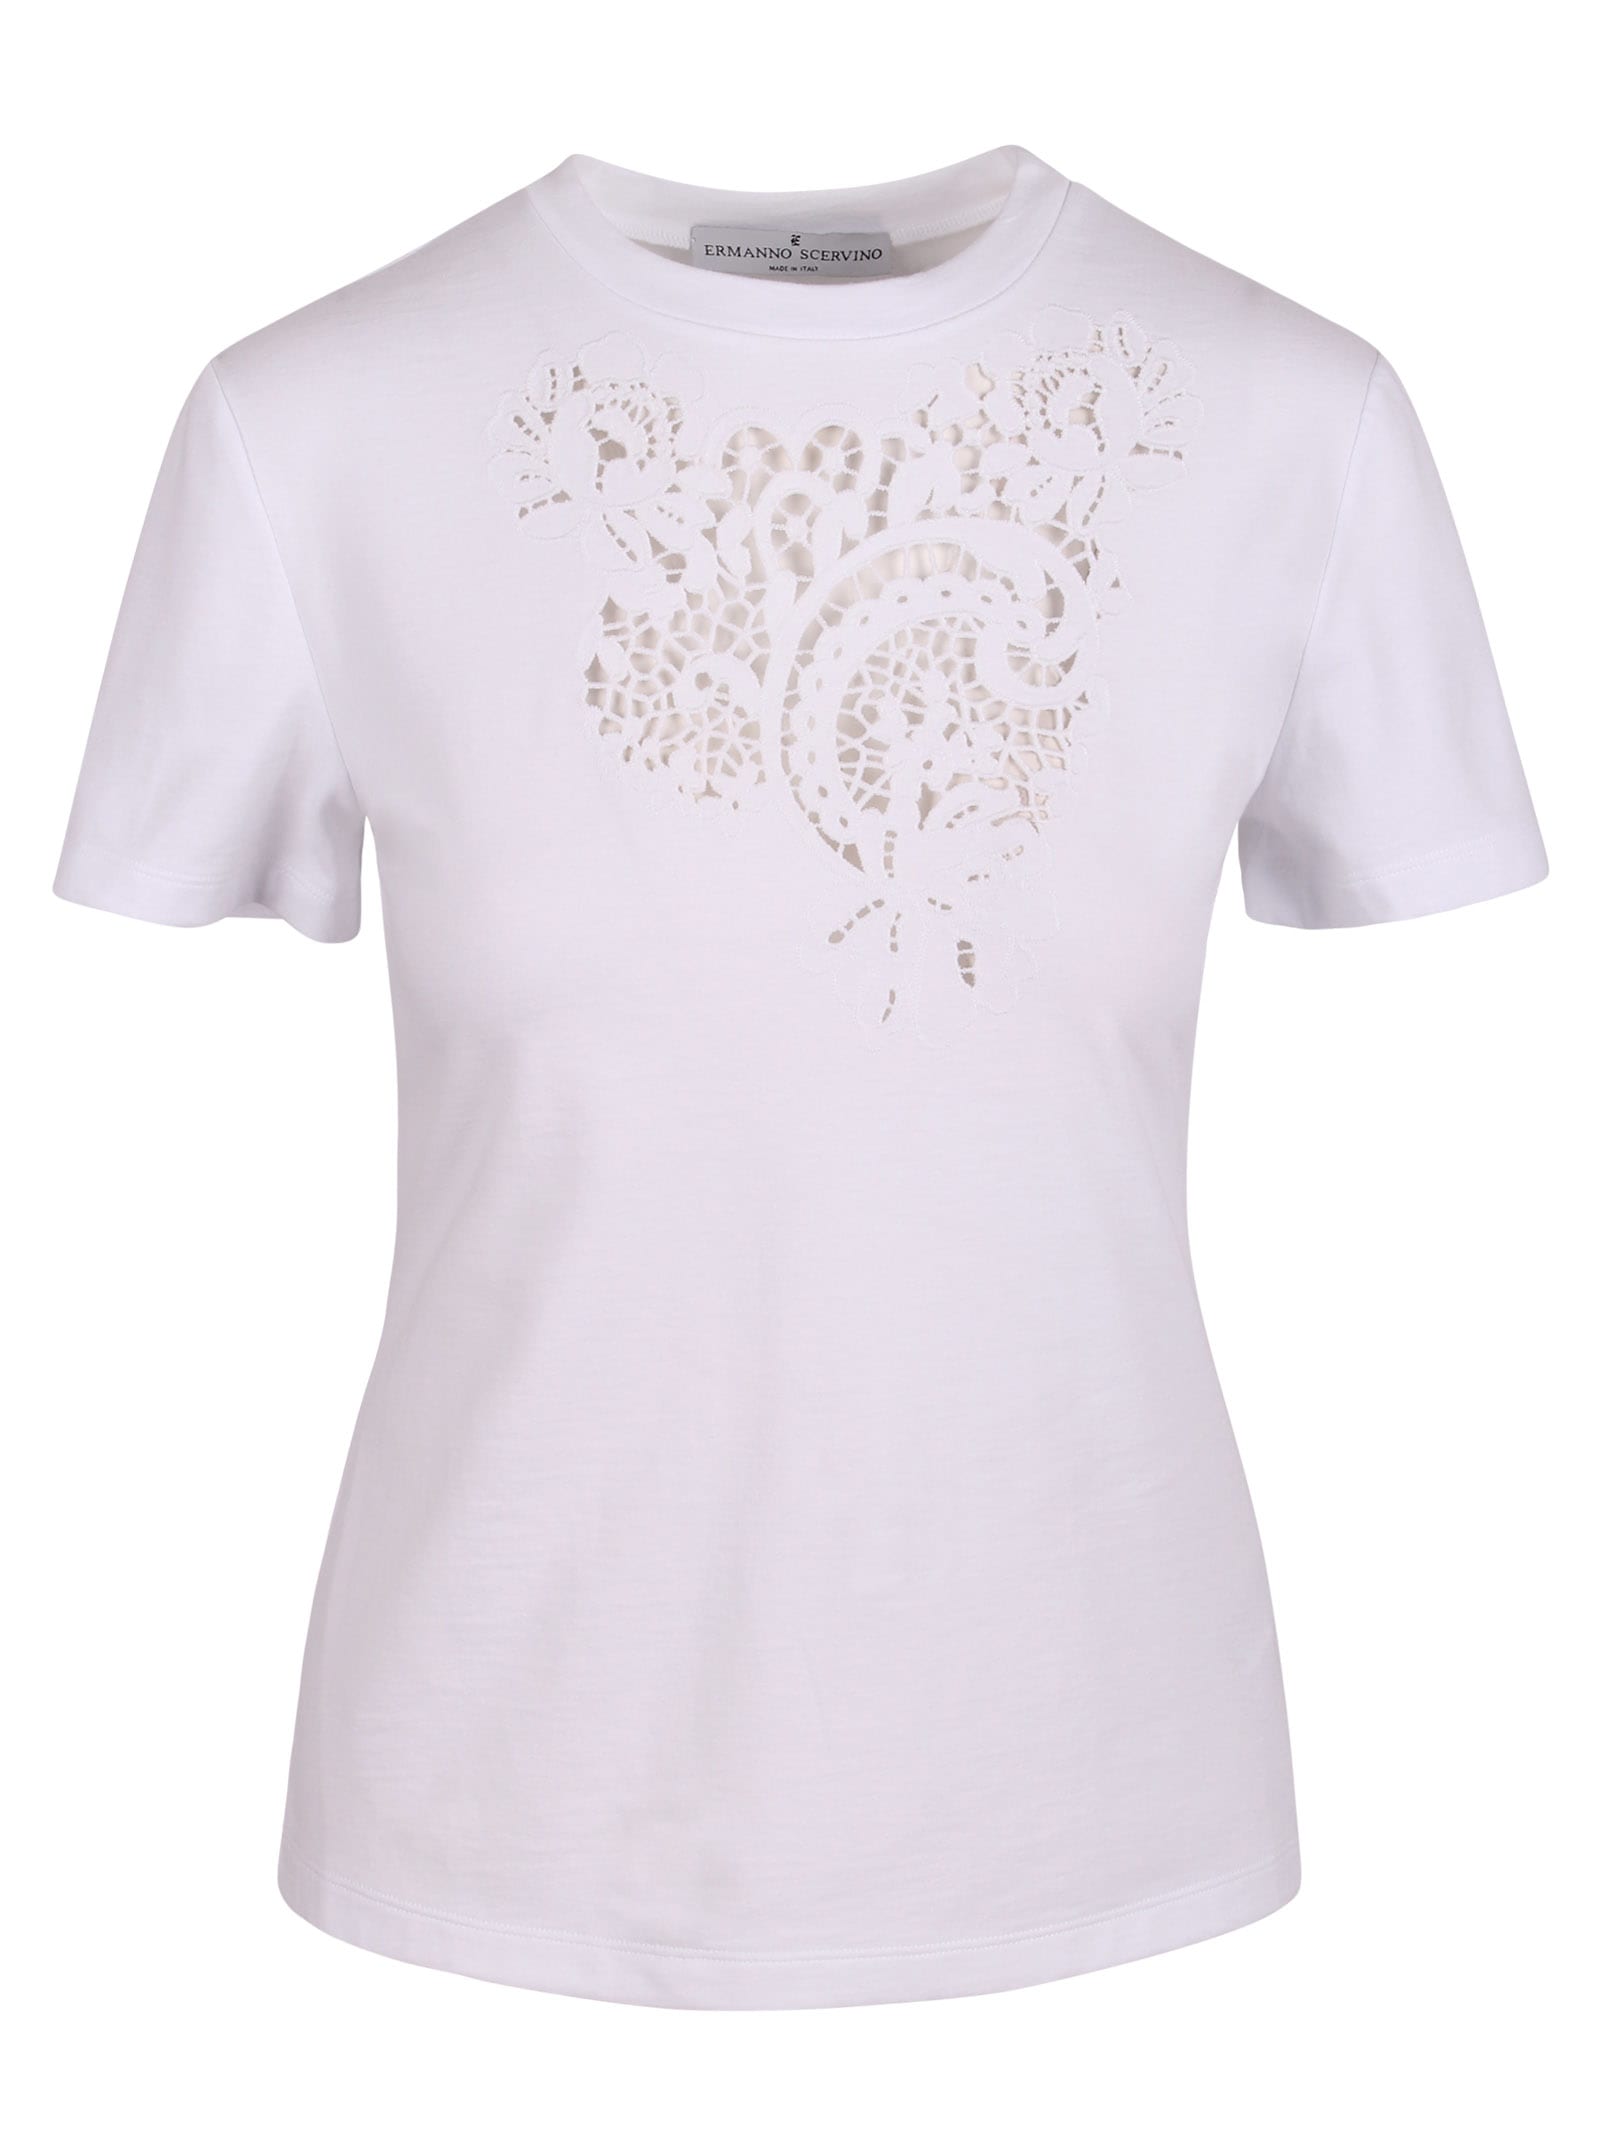 Ermanno Scervino Lace Application Cotton T-shirt